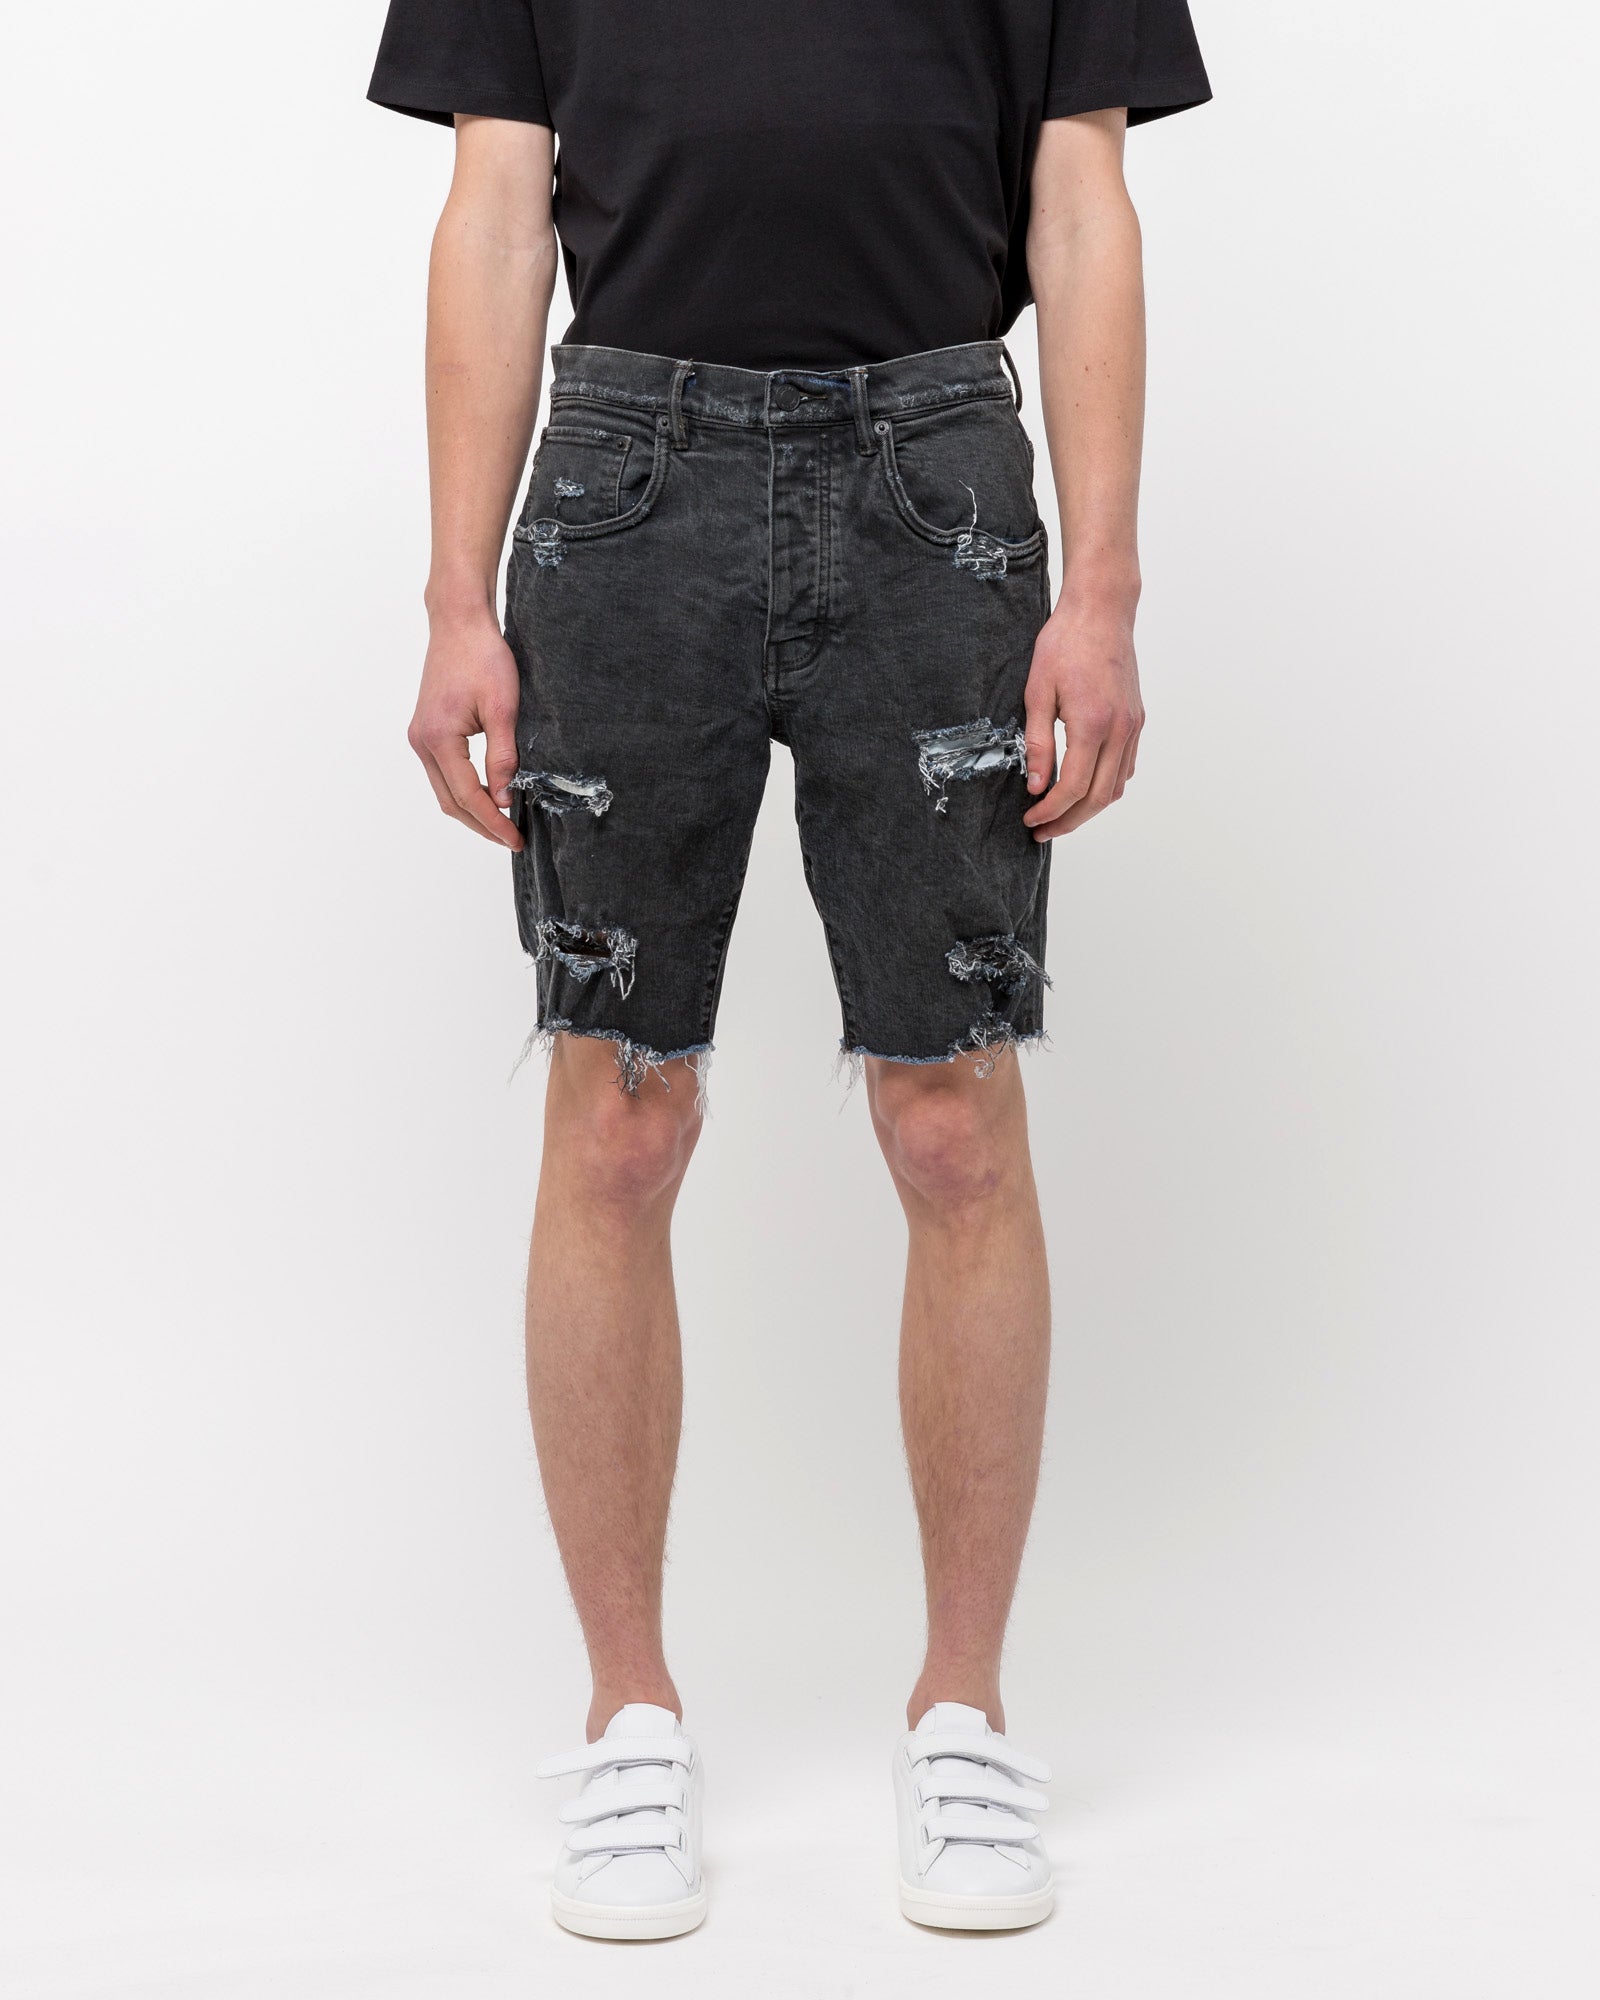 020 Denim Shorts in Vintage Coated Black